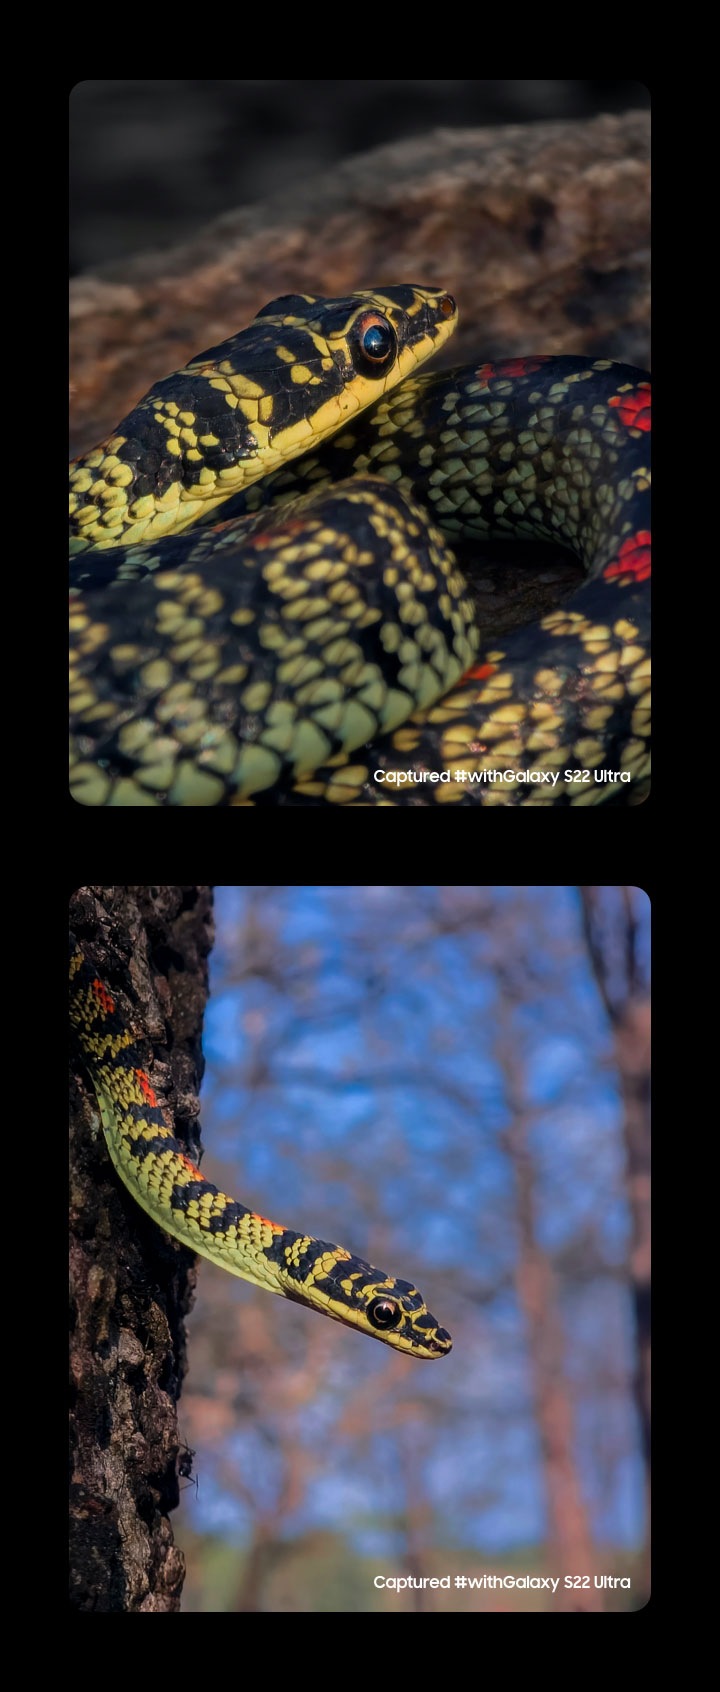 兩張使用Galaxy S22 Ultra拍攝的快照並排，照片中的主角是一條蛇。#withGalaxy S22 Ultra拍攝